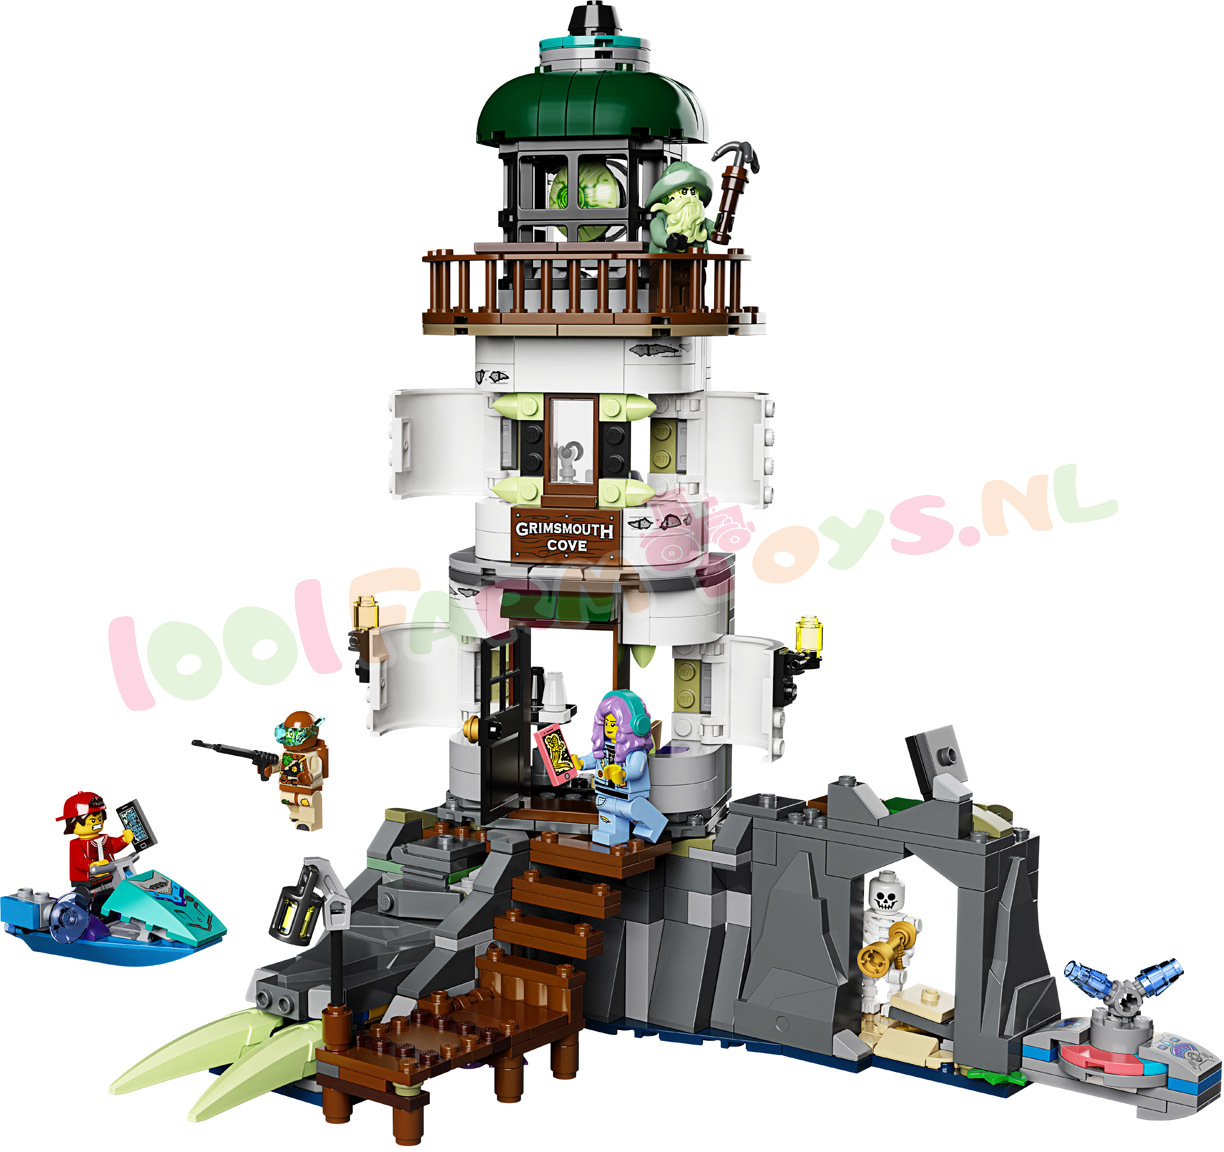 LEGO HIDDEN De duistere Vuurtoren - 70431 - Uitverkocht Farm - 1001Farmtoys landbouwspeelgoed - Let op dit wordt niet meer geproduceerd door